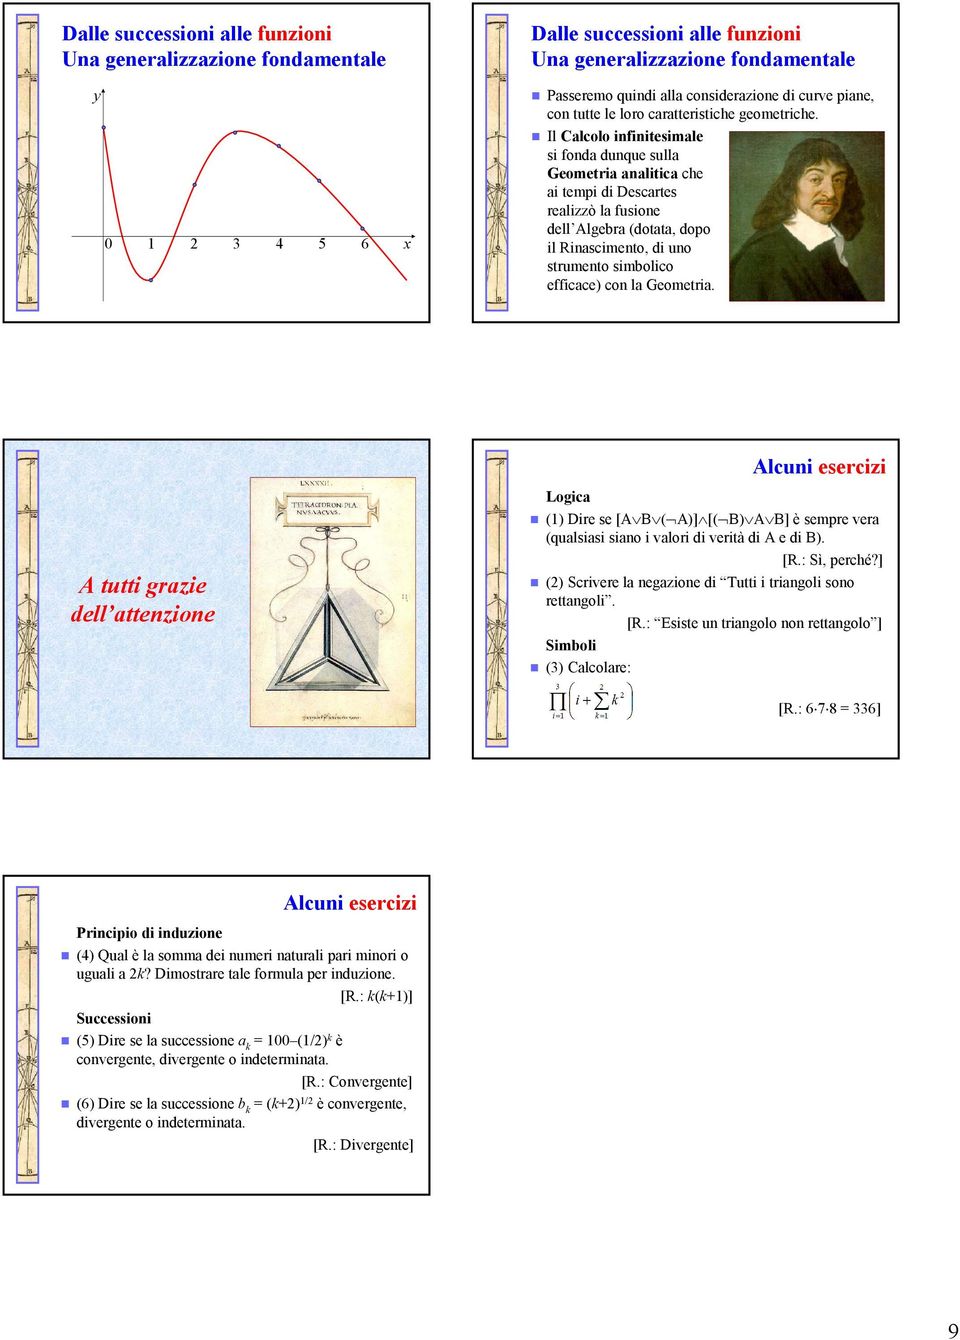 Il Calcolo infinitesimale si fonda dunque sulla Geometria analitica che ai tempi di Descartes realizzò la fusione dell Algebra (dotata, dopo il Rinascimento, di uno strumento simbolico efficace) con